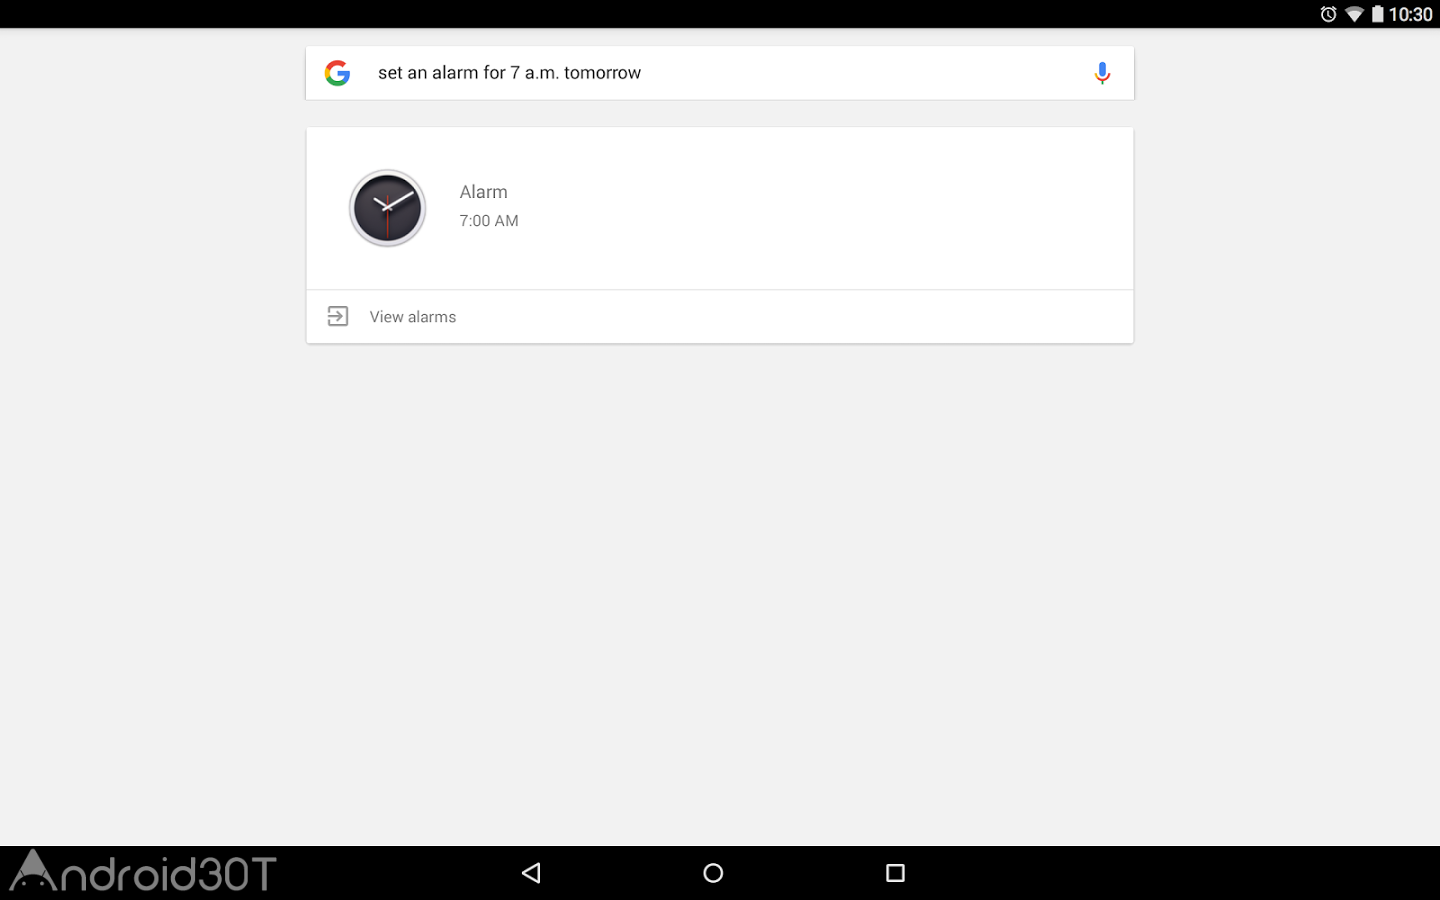 دانلود Google App 13.2.19 – برنامه رسمی گوگل برای موبایل اندروید